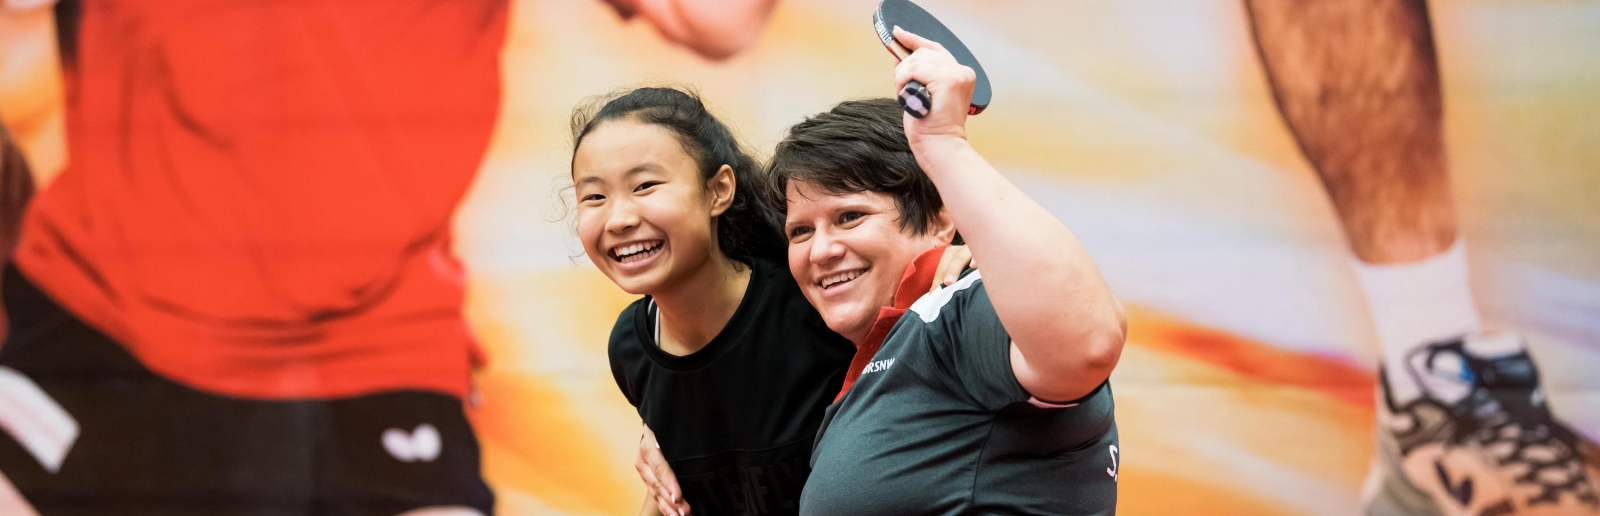 Zwei Tischtennisspielerinnen freuen sich, eine von ihnen sitzt im Rollstuhl. Im Hintergrund an der Wand ein großes Bild von einem Tischtennisspieler im roten T-Shirt und schwarzer, kurzer Hose.